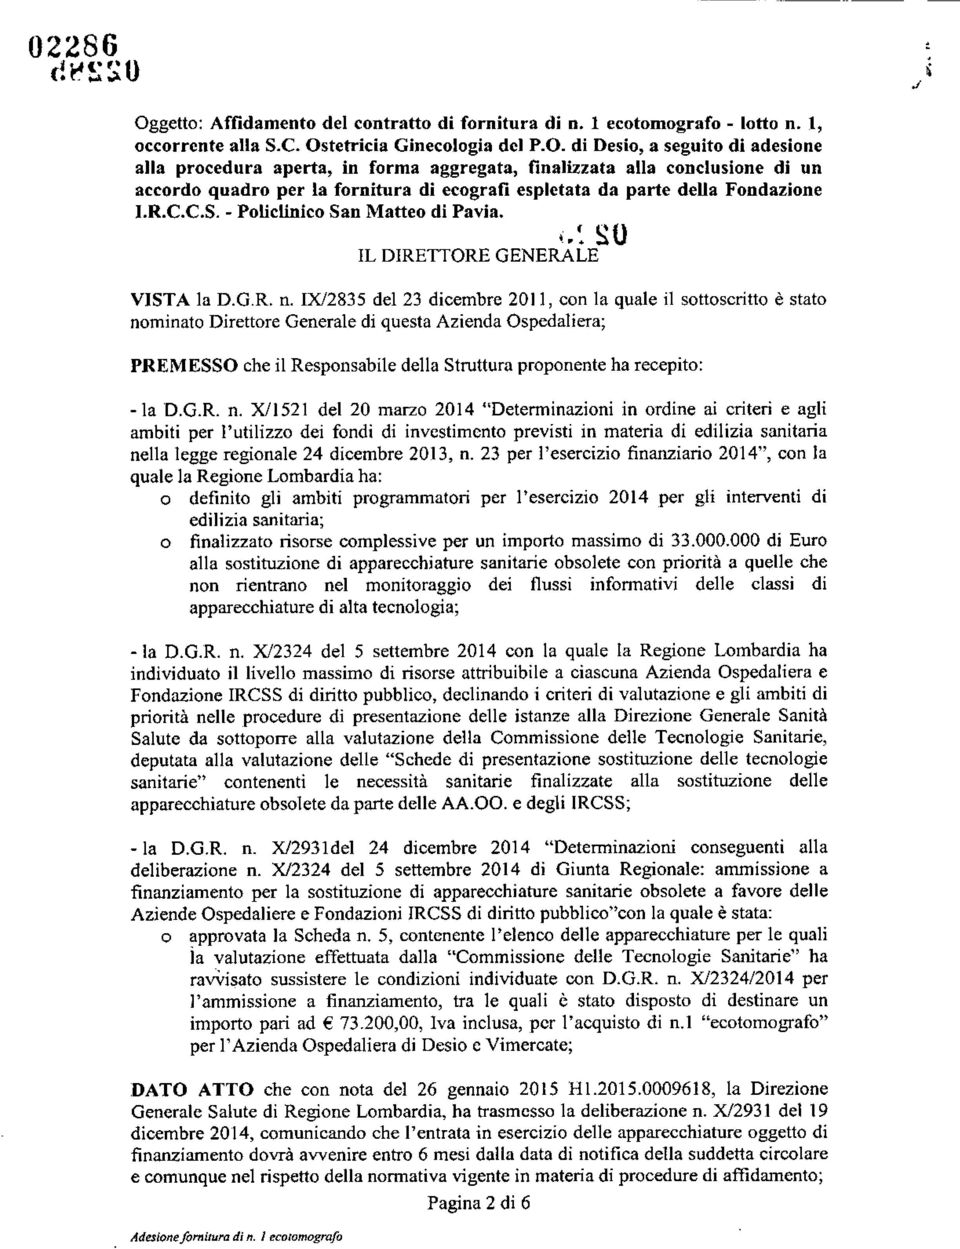 getto: Affidamento del contratto di fornitura di D. 1 ecotomografo - lotto n. 1, occorrente alla S.C. Os